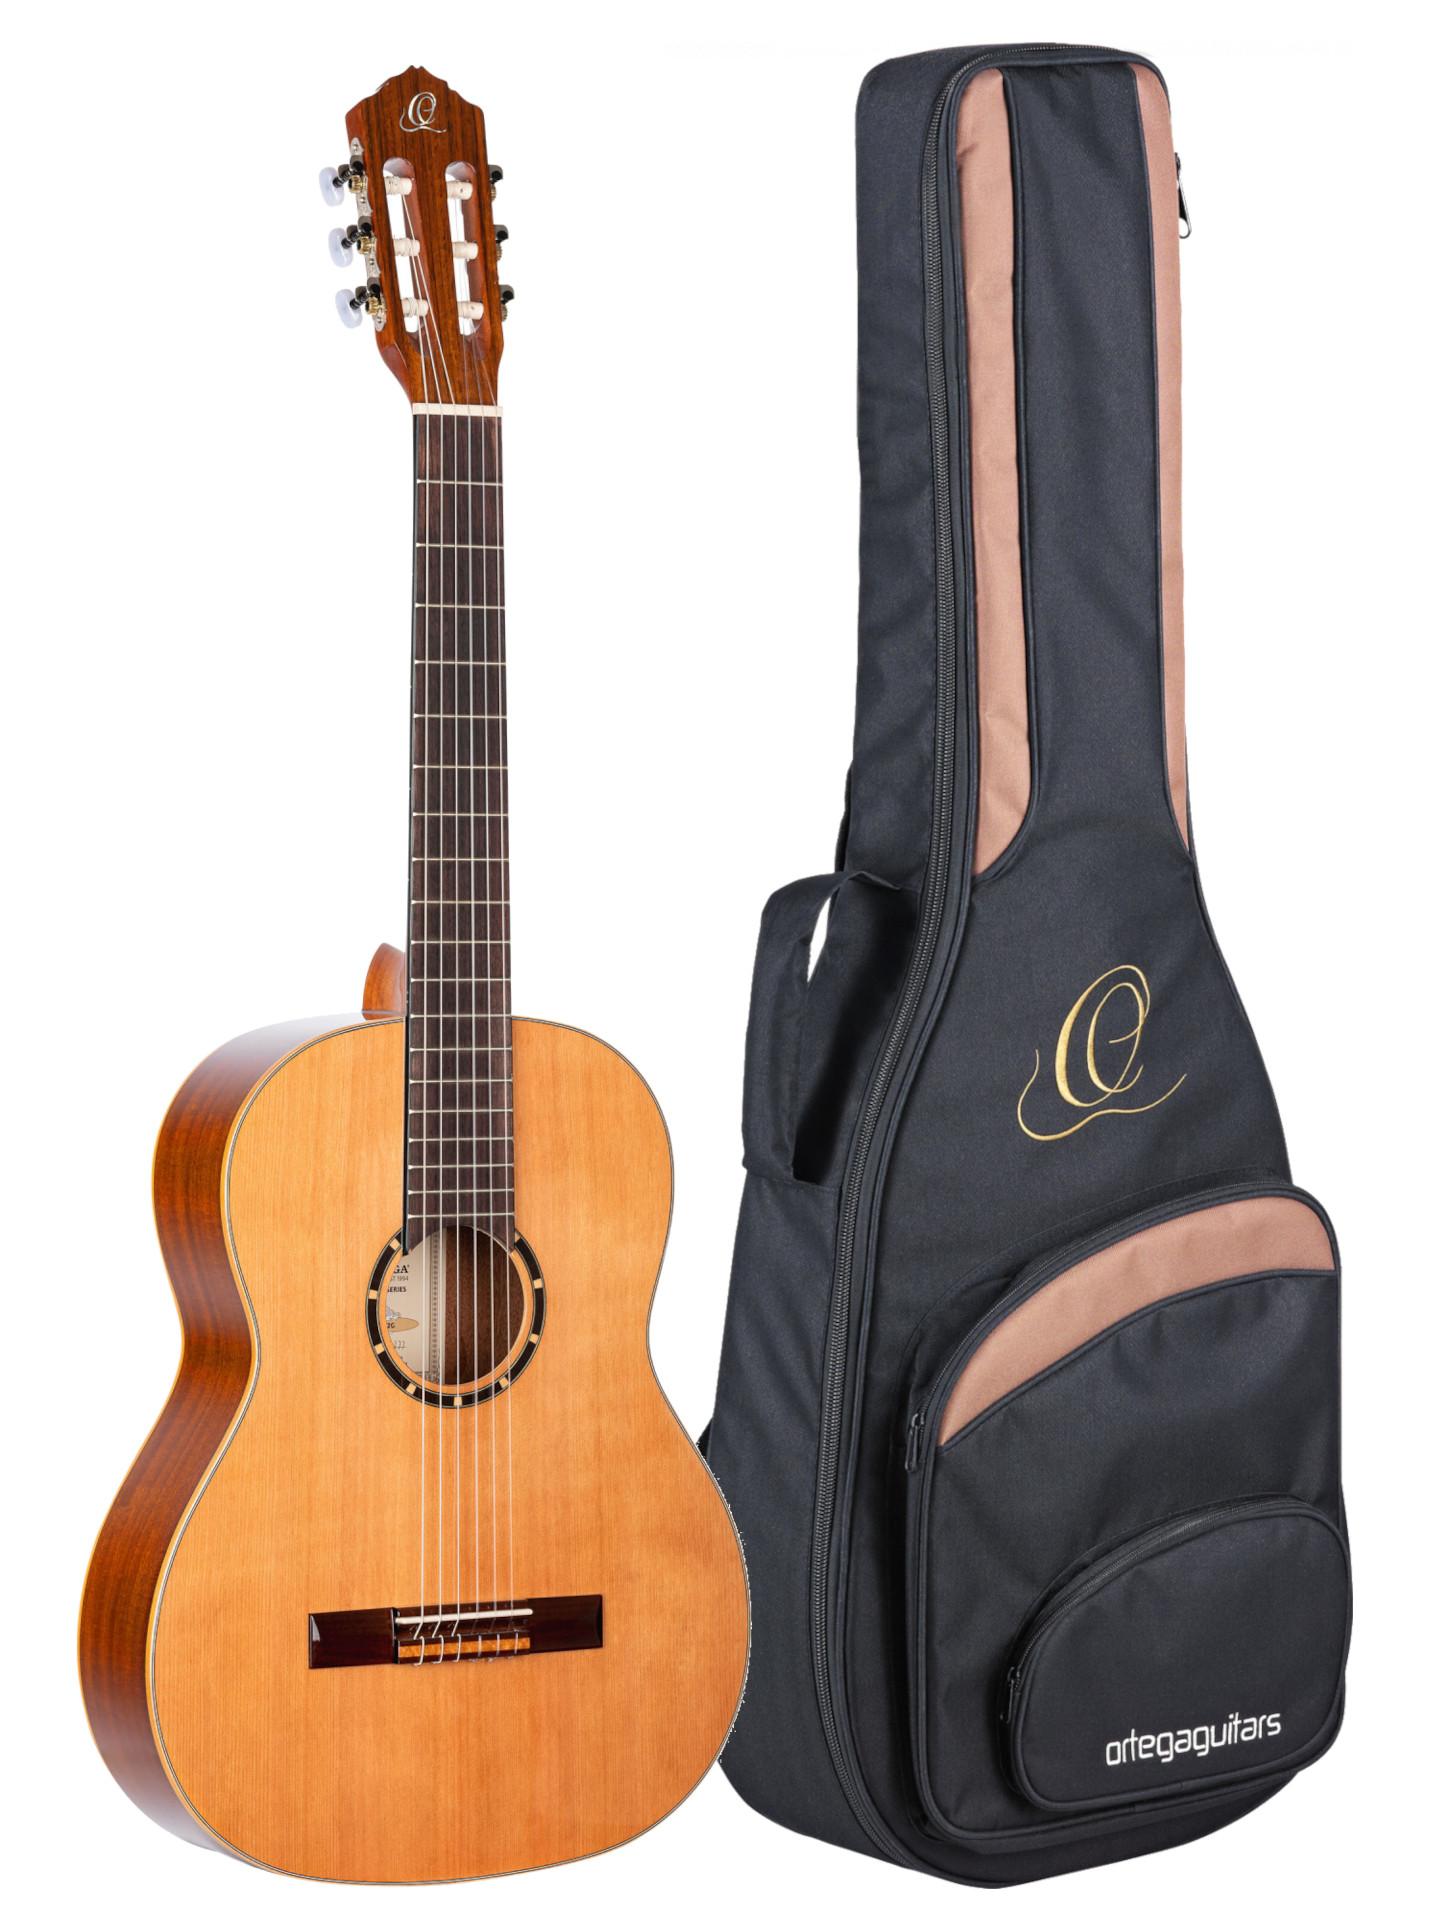 ORTEGA R122G Family Series Gloss Edition - Gitara klasyczna 4/4 z cedrowym Topem + ekskluzywny pokrowiec